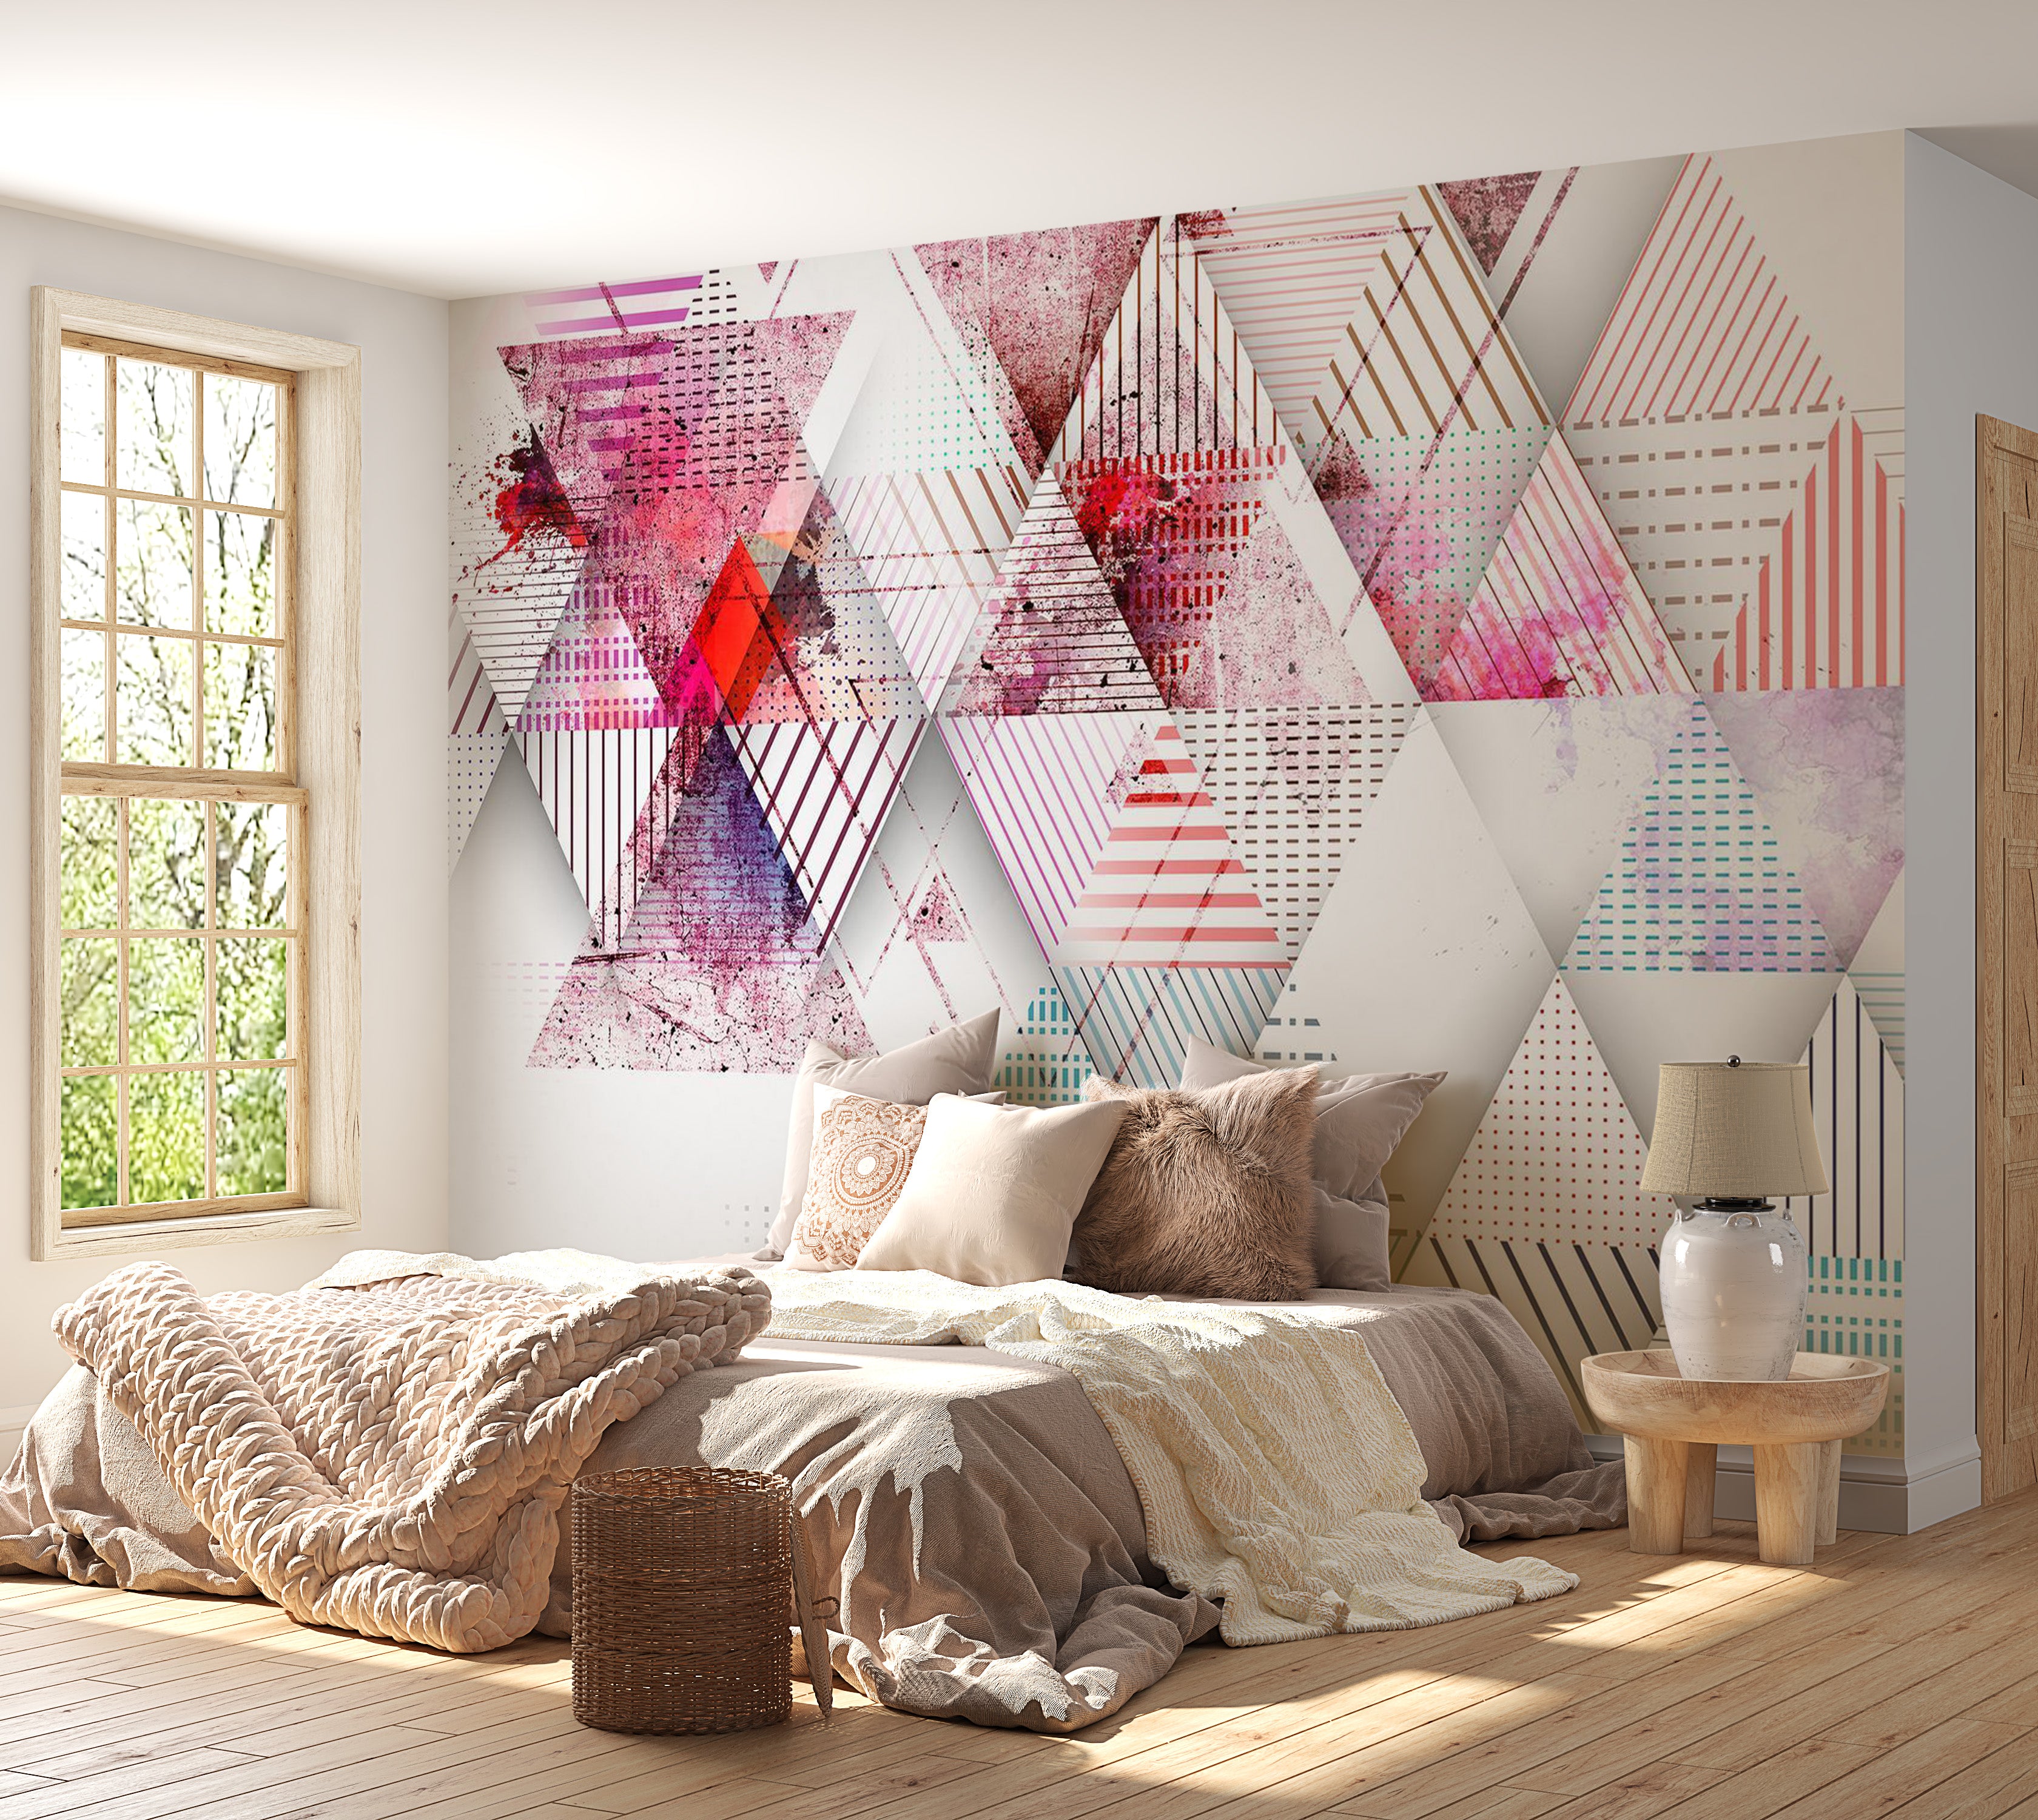 Abstract Wallpaper Wall Mural - Triangular World 39"Wx27"H